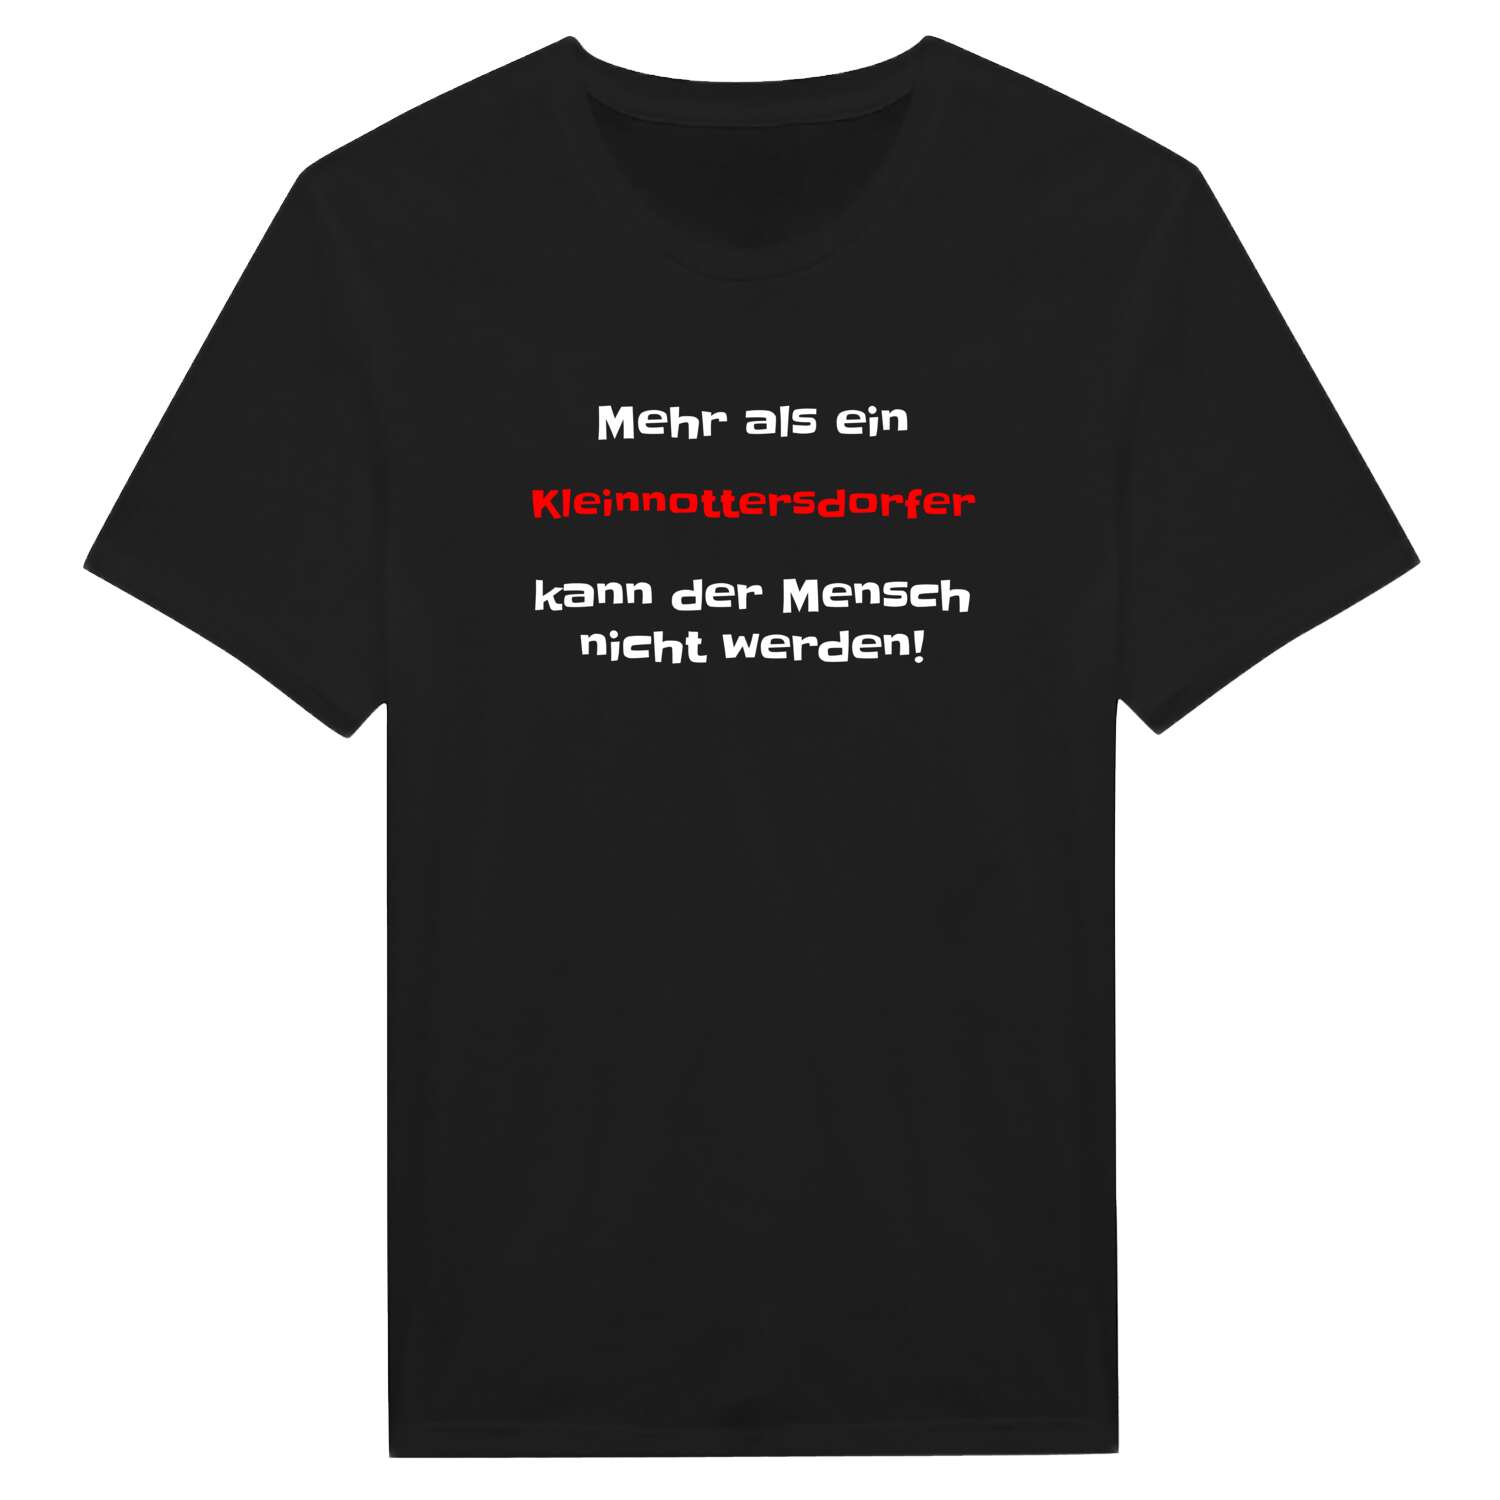 Kleinnottersdorf T-Shirt »Mehr als ein«